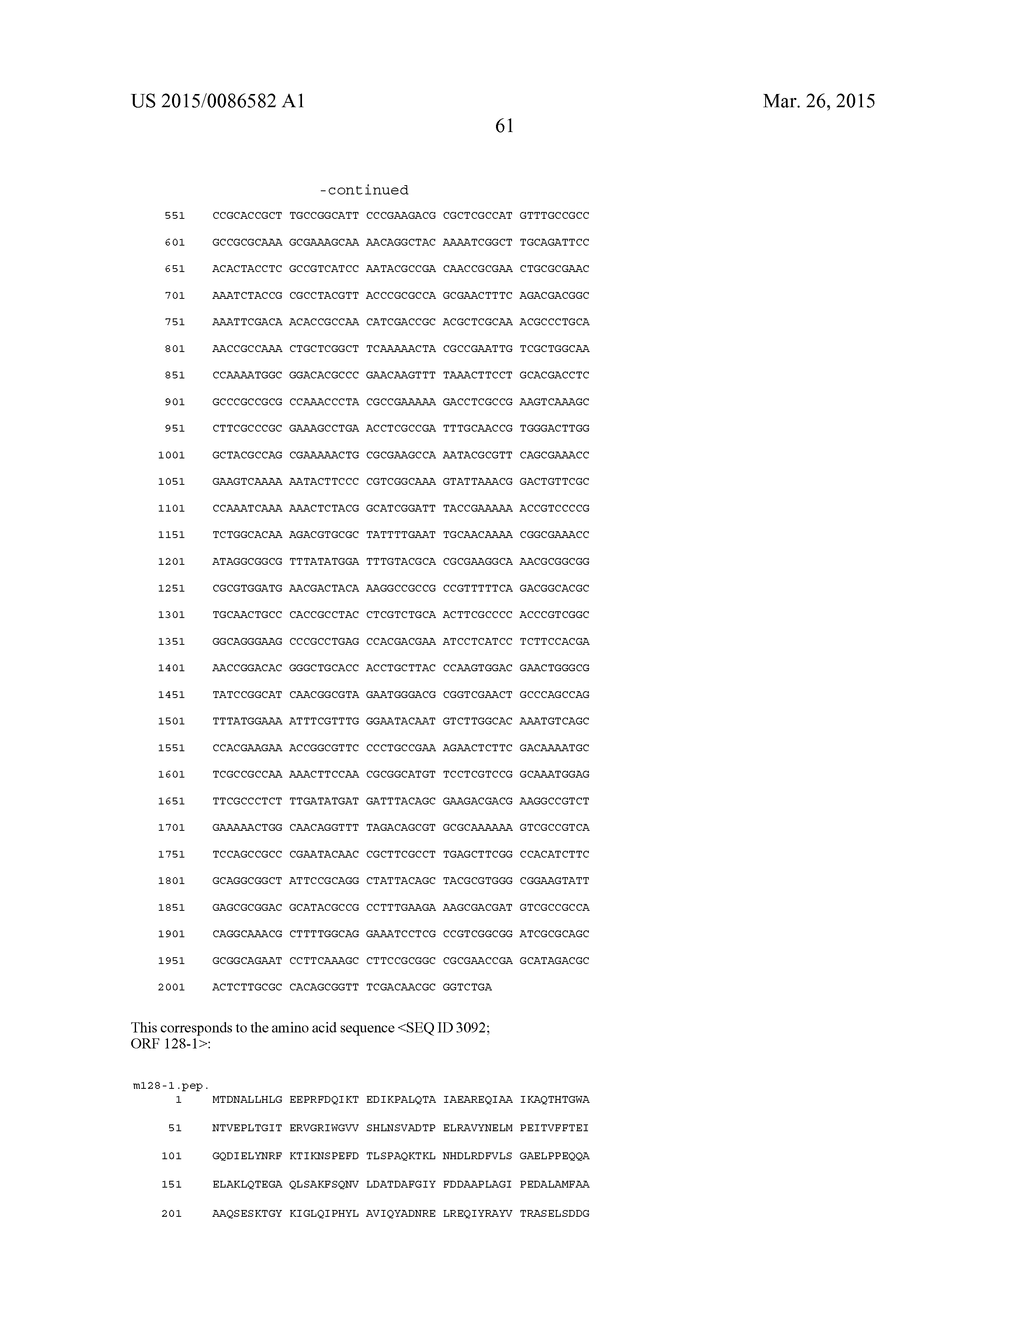 NEISSERIA MENINGITIDIS ANTIGENS AND COMPOSITIONS - diagram, schematic, and image 93